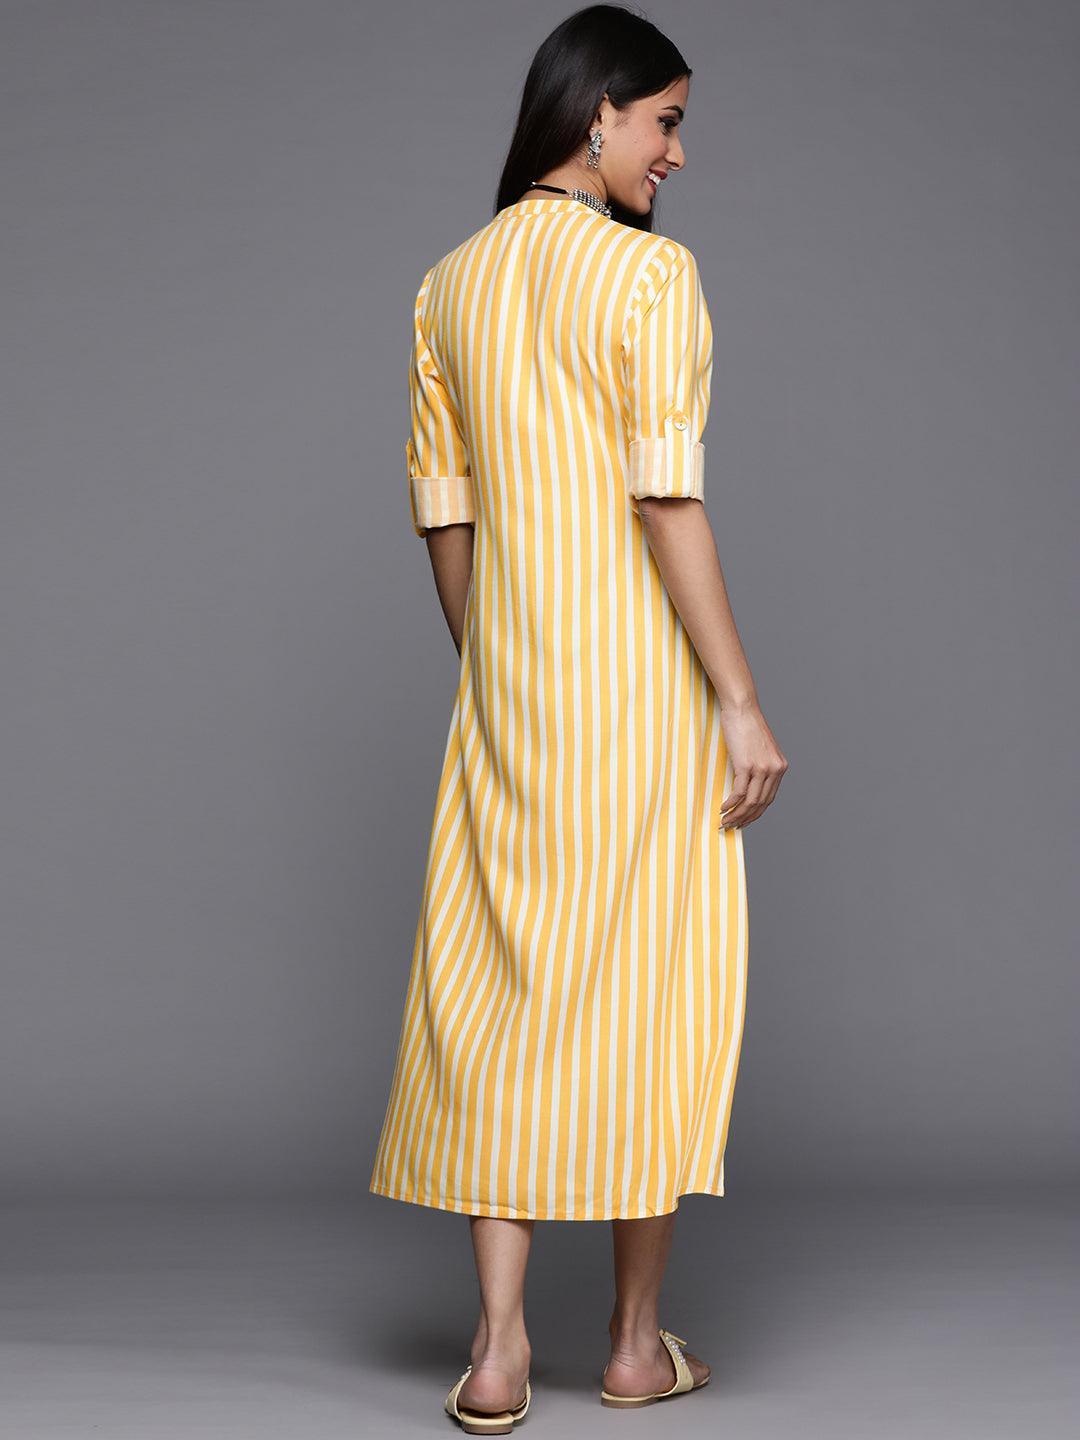 Yellow Striped Rayon Dress - ShopLibas